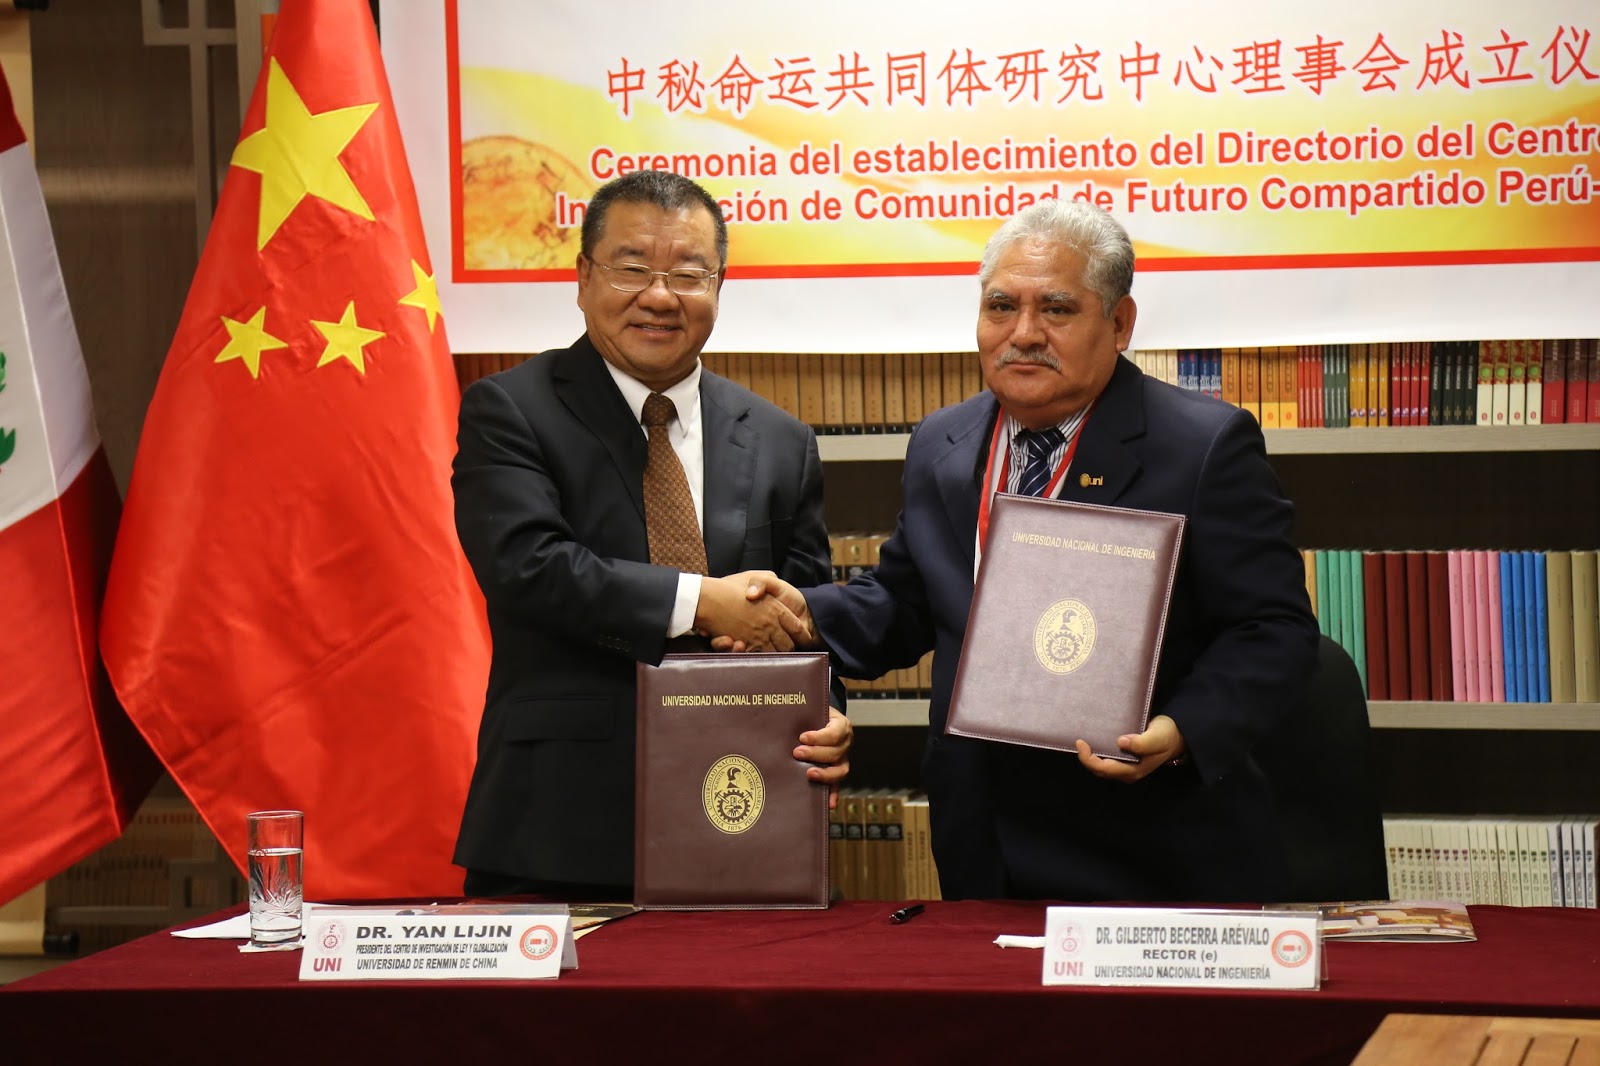 UNI estableció consejo directivo para construcción de “Centro de Investigación Compartido entre China y Perú”